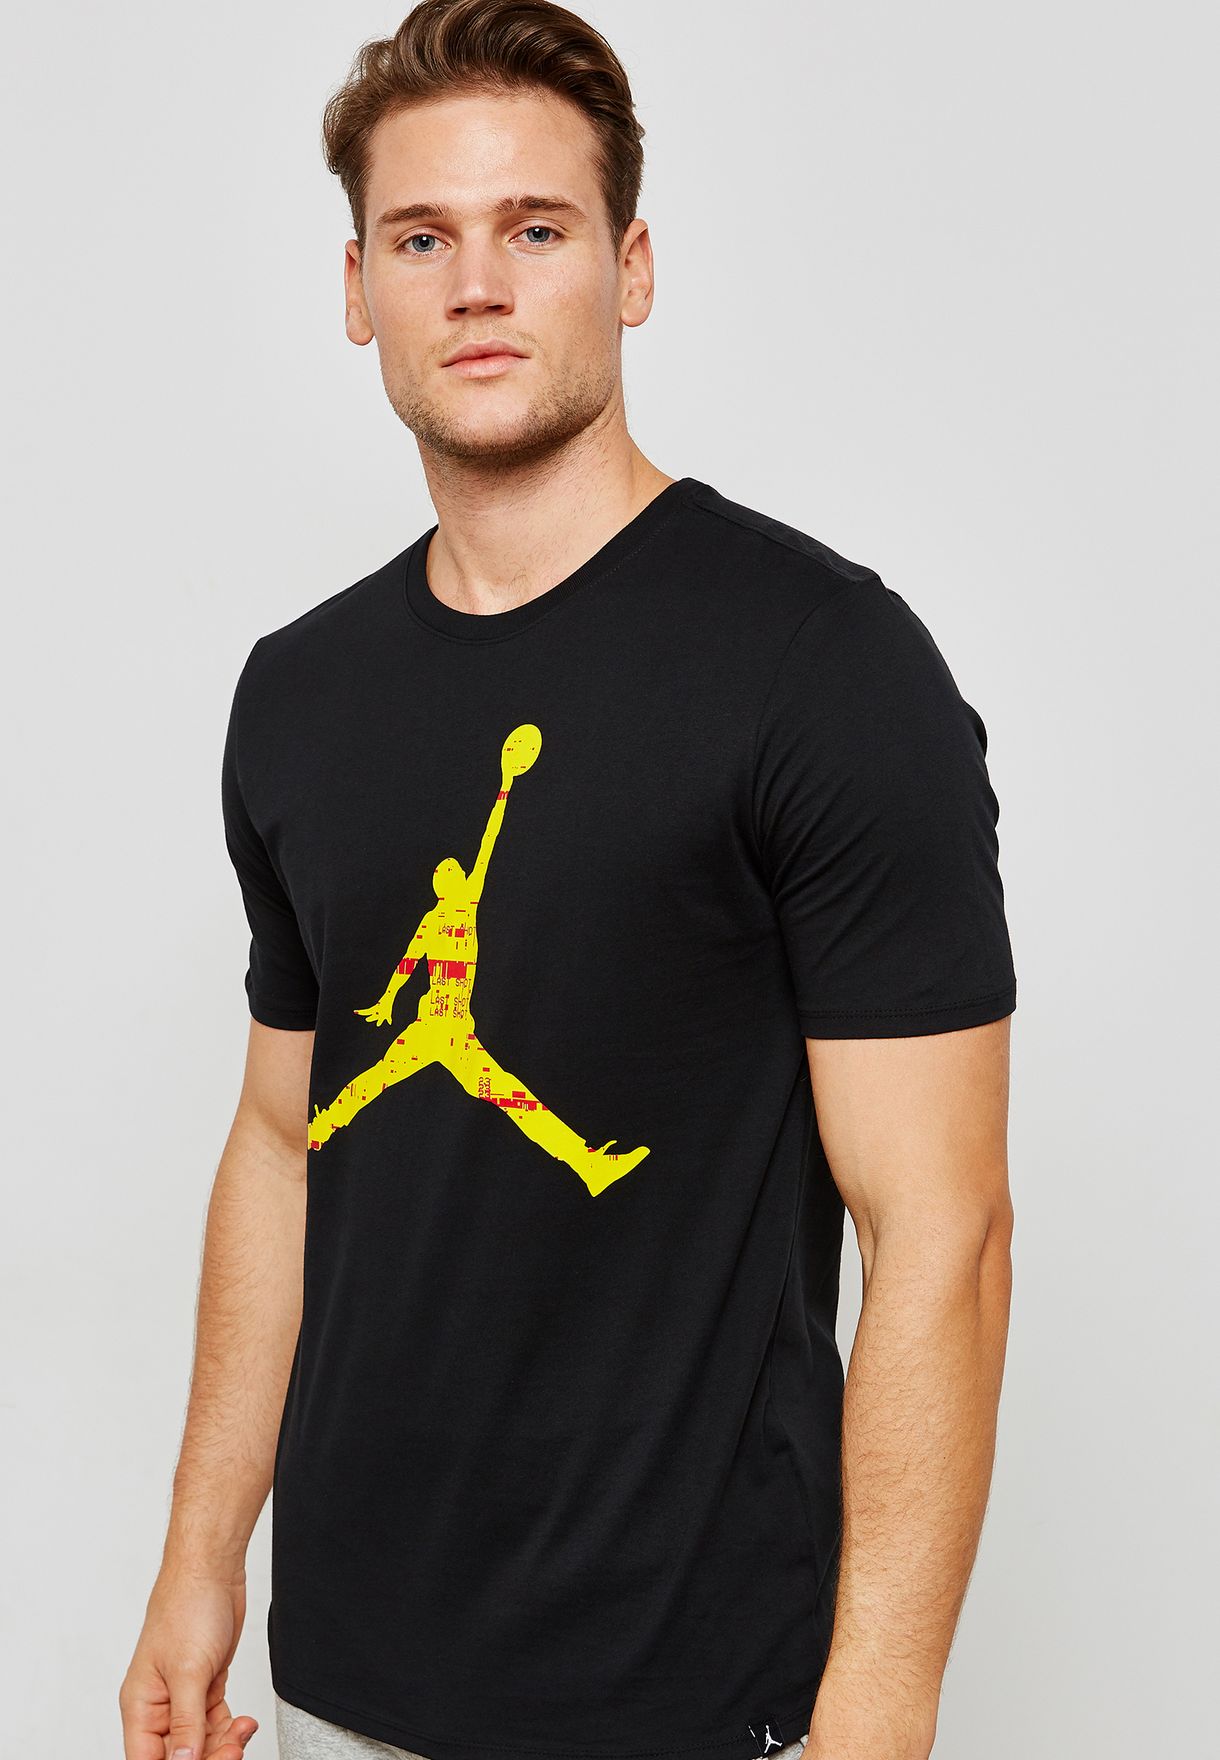 black and yellow jordan shirt mens